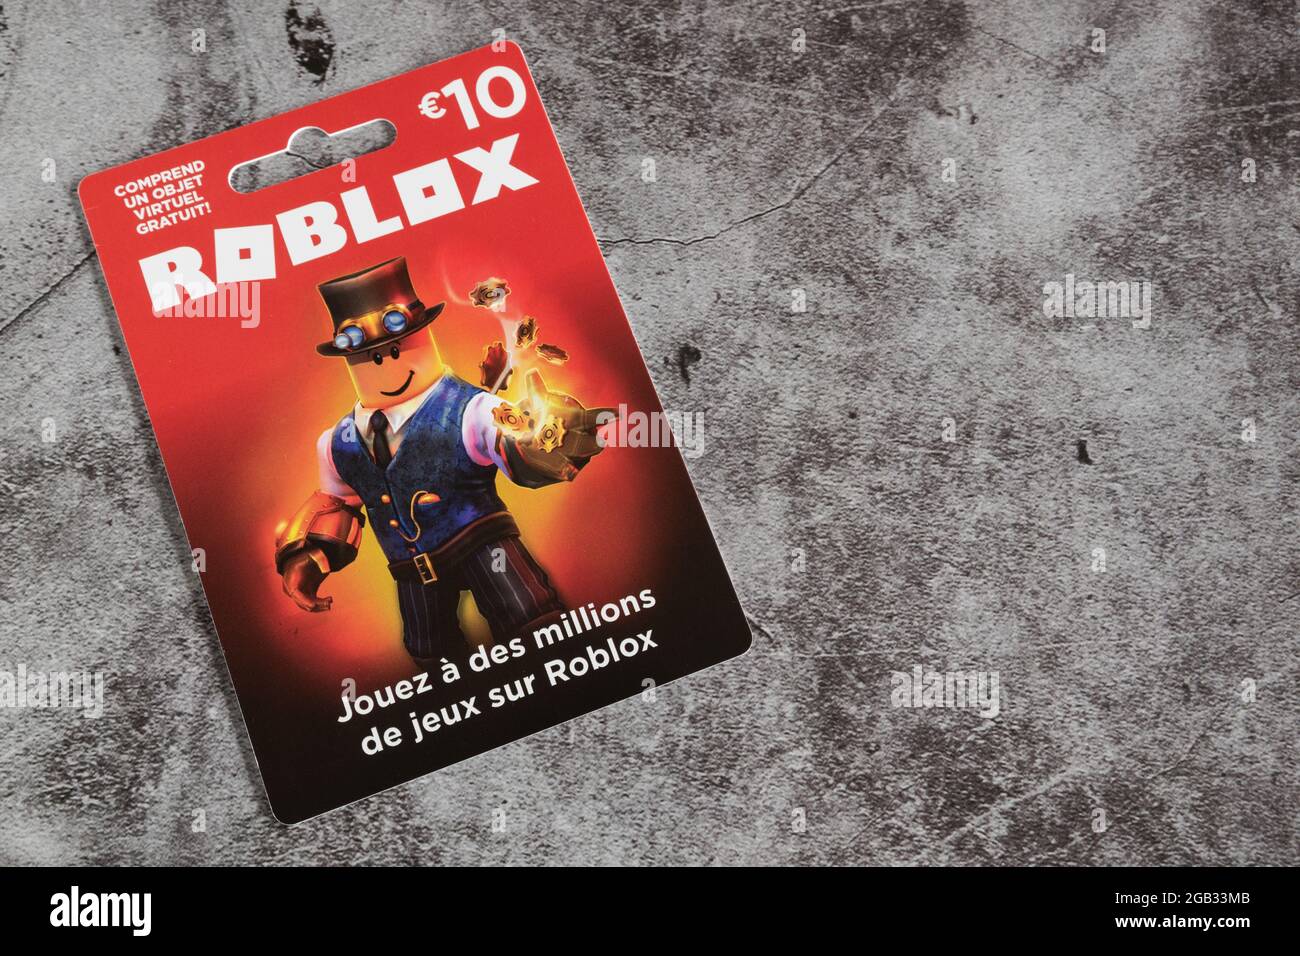 Carte cadeau de jeu de Roblox, Roblox est un jeu vidéo en ligne multijoueur  Photo Stock - Alamy